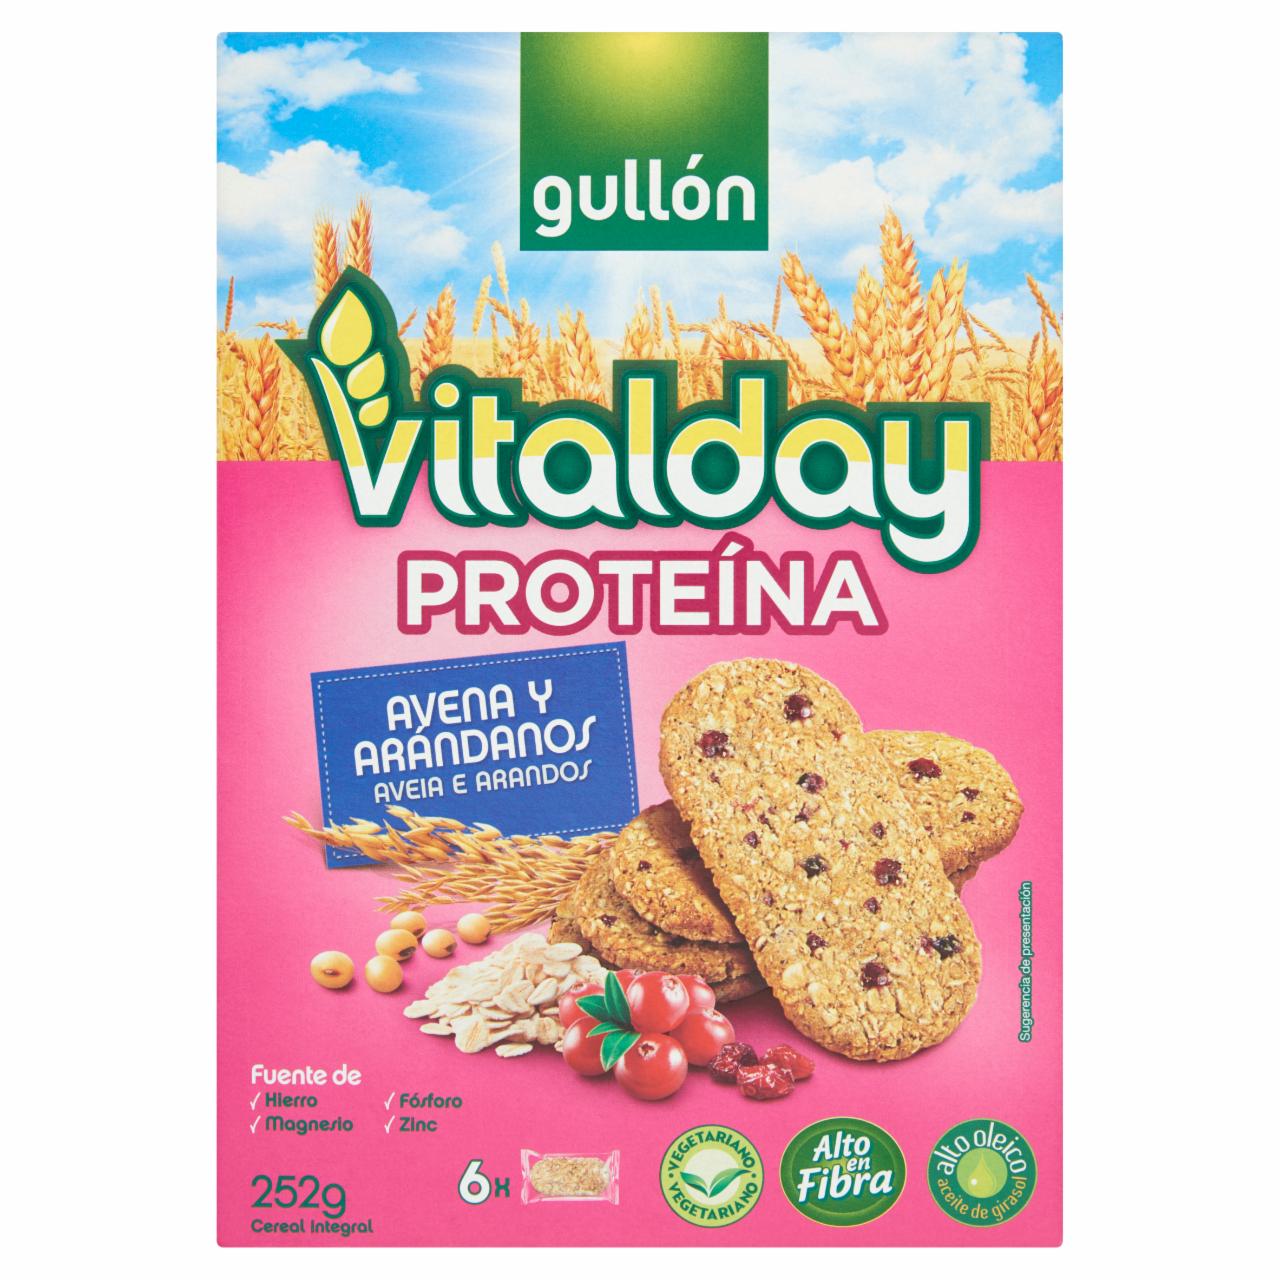 Képek - Gullón Vitalday proteines keksz zabbal és áfonyával 252 g